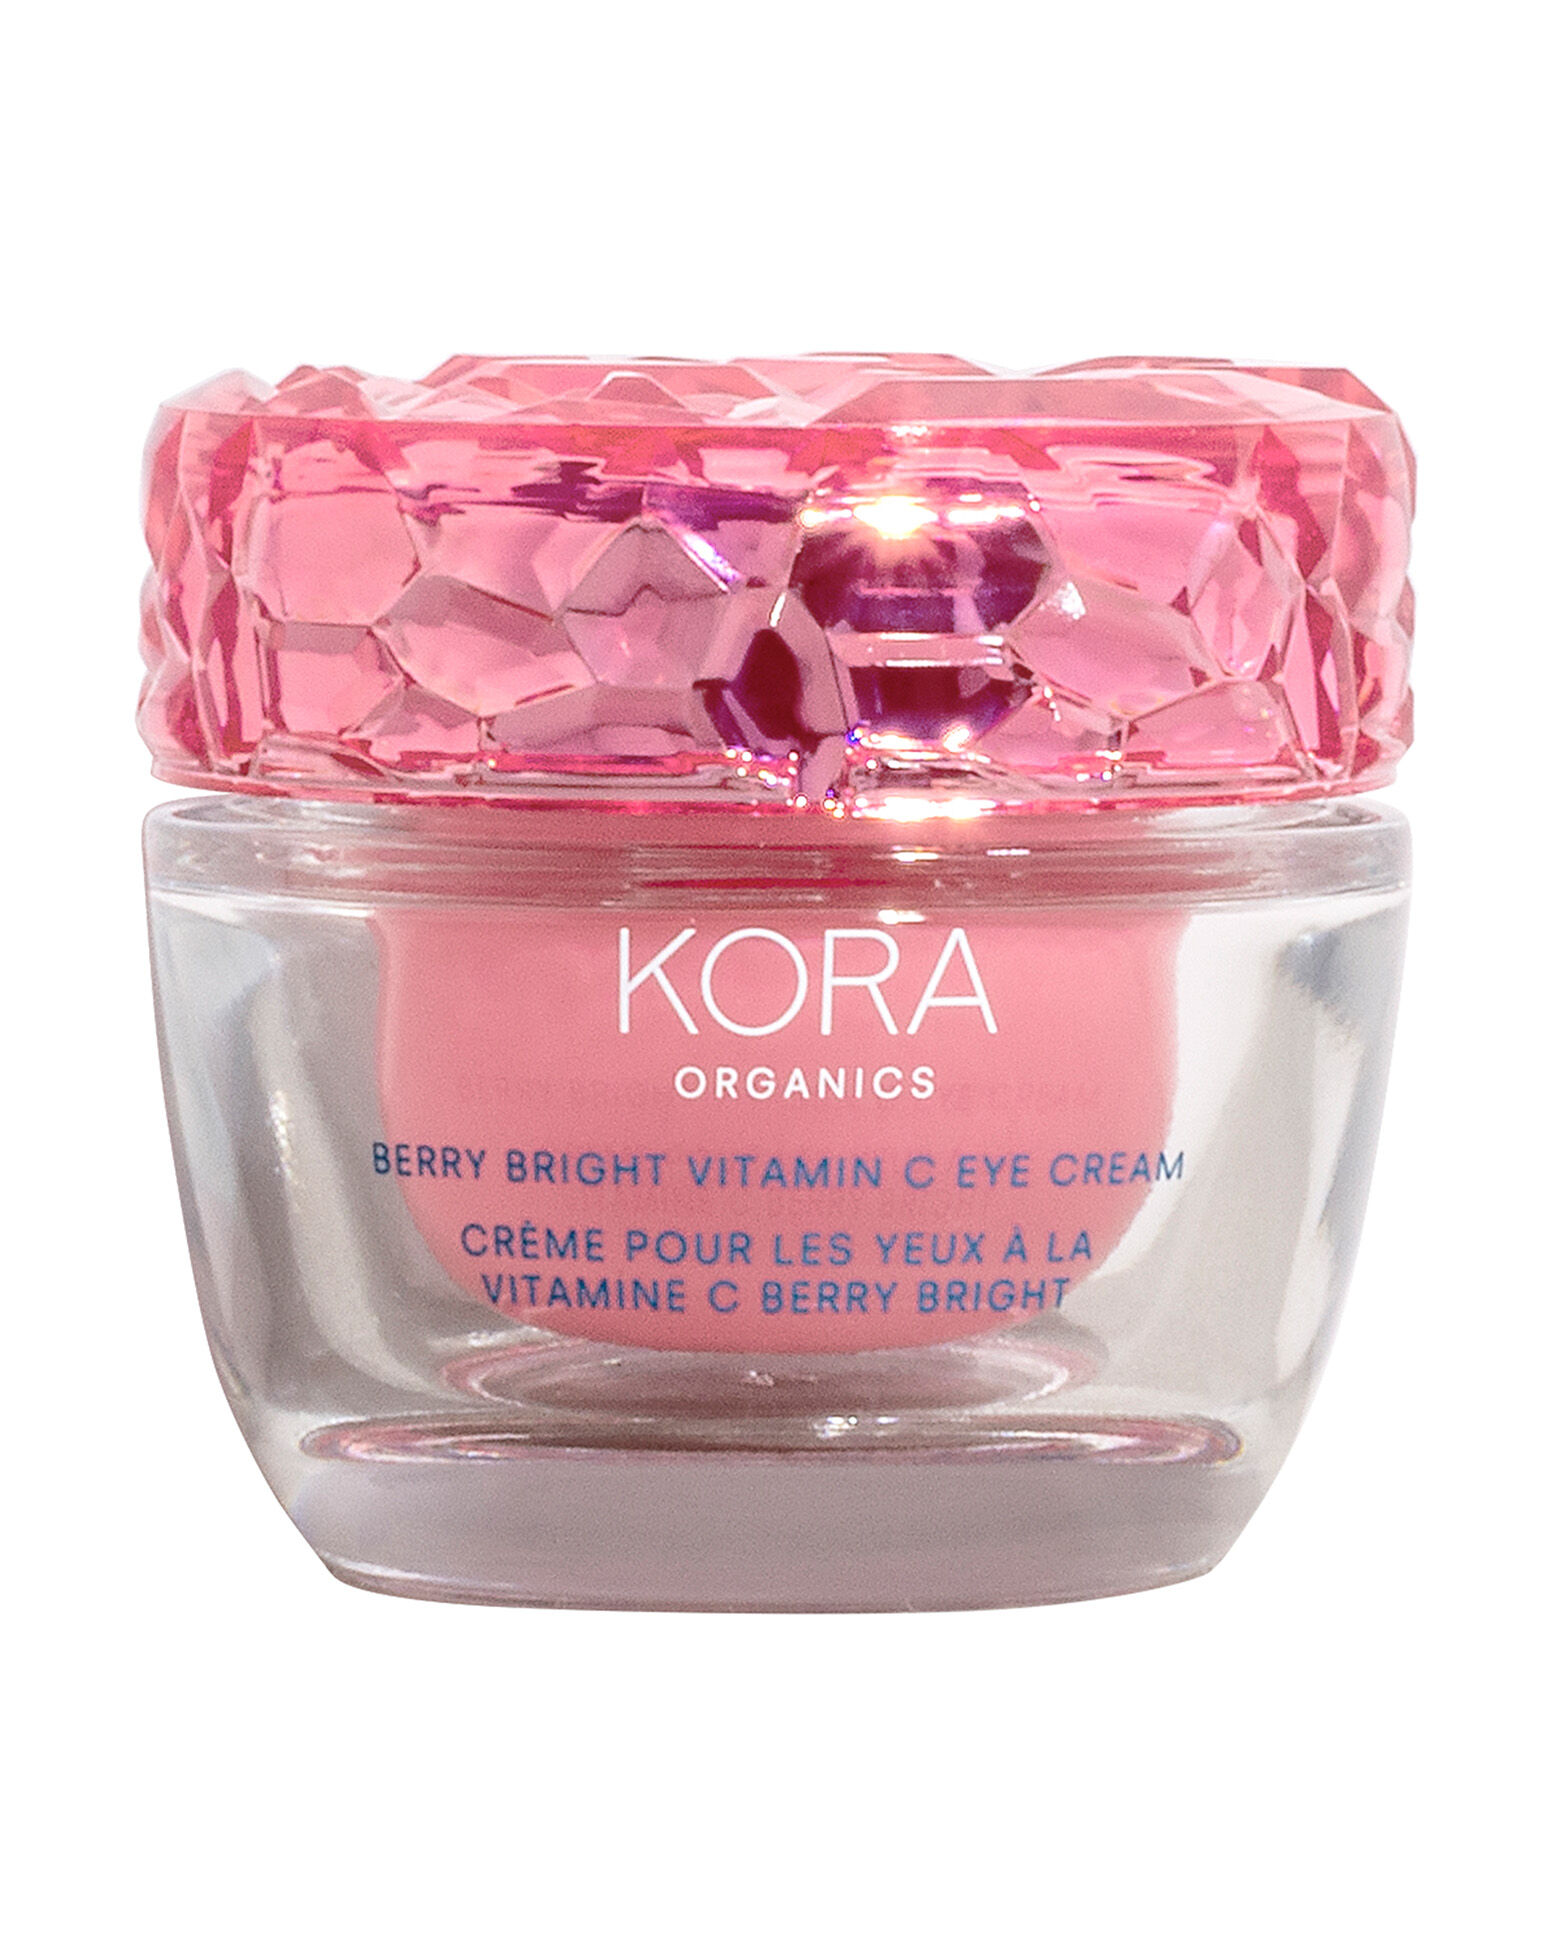 KORA Organics - Berry Bright Vitamin C Eye Cream